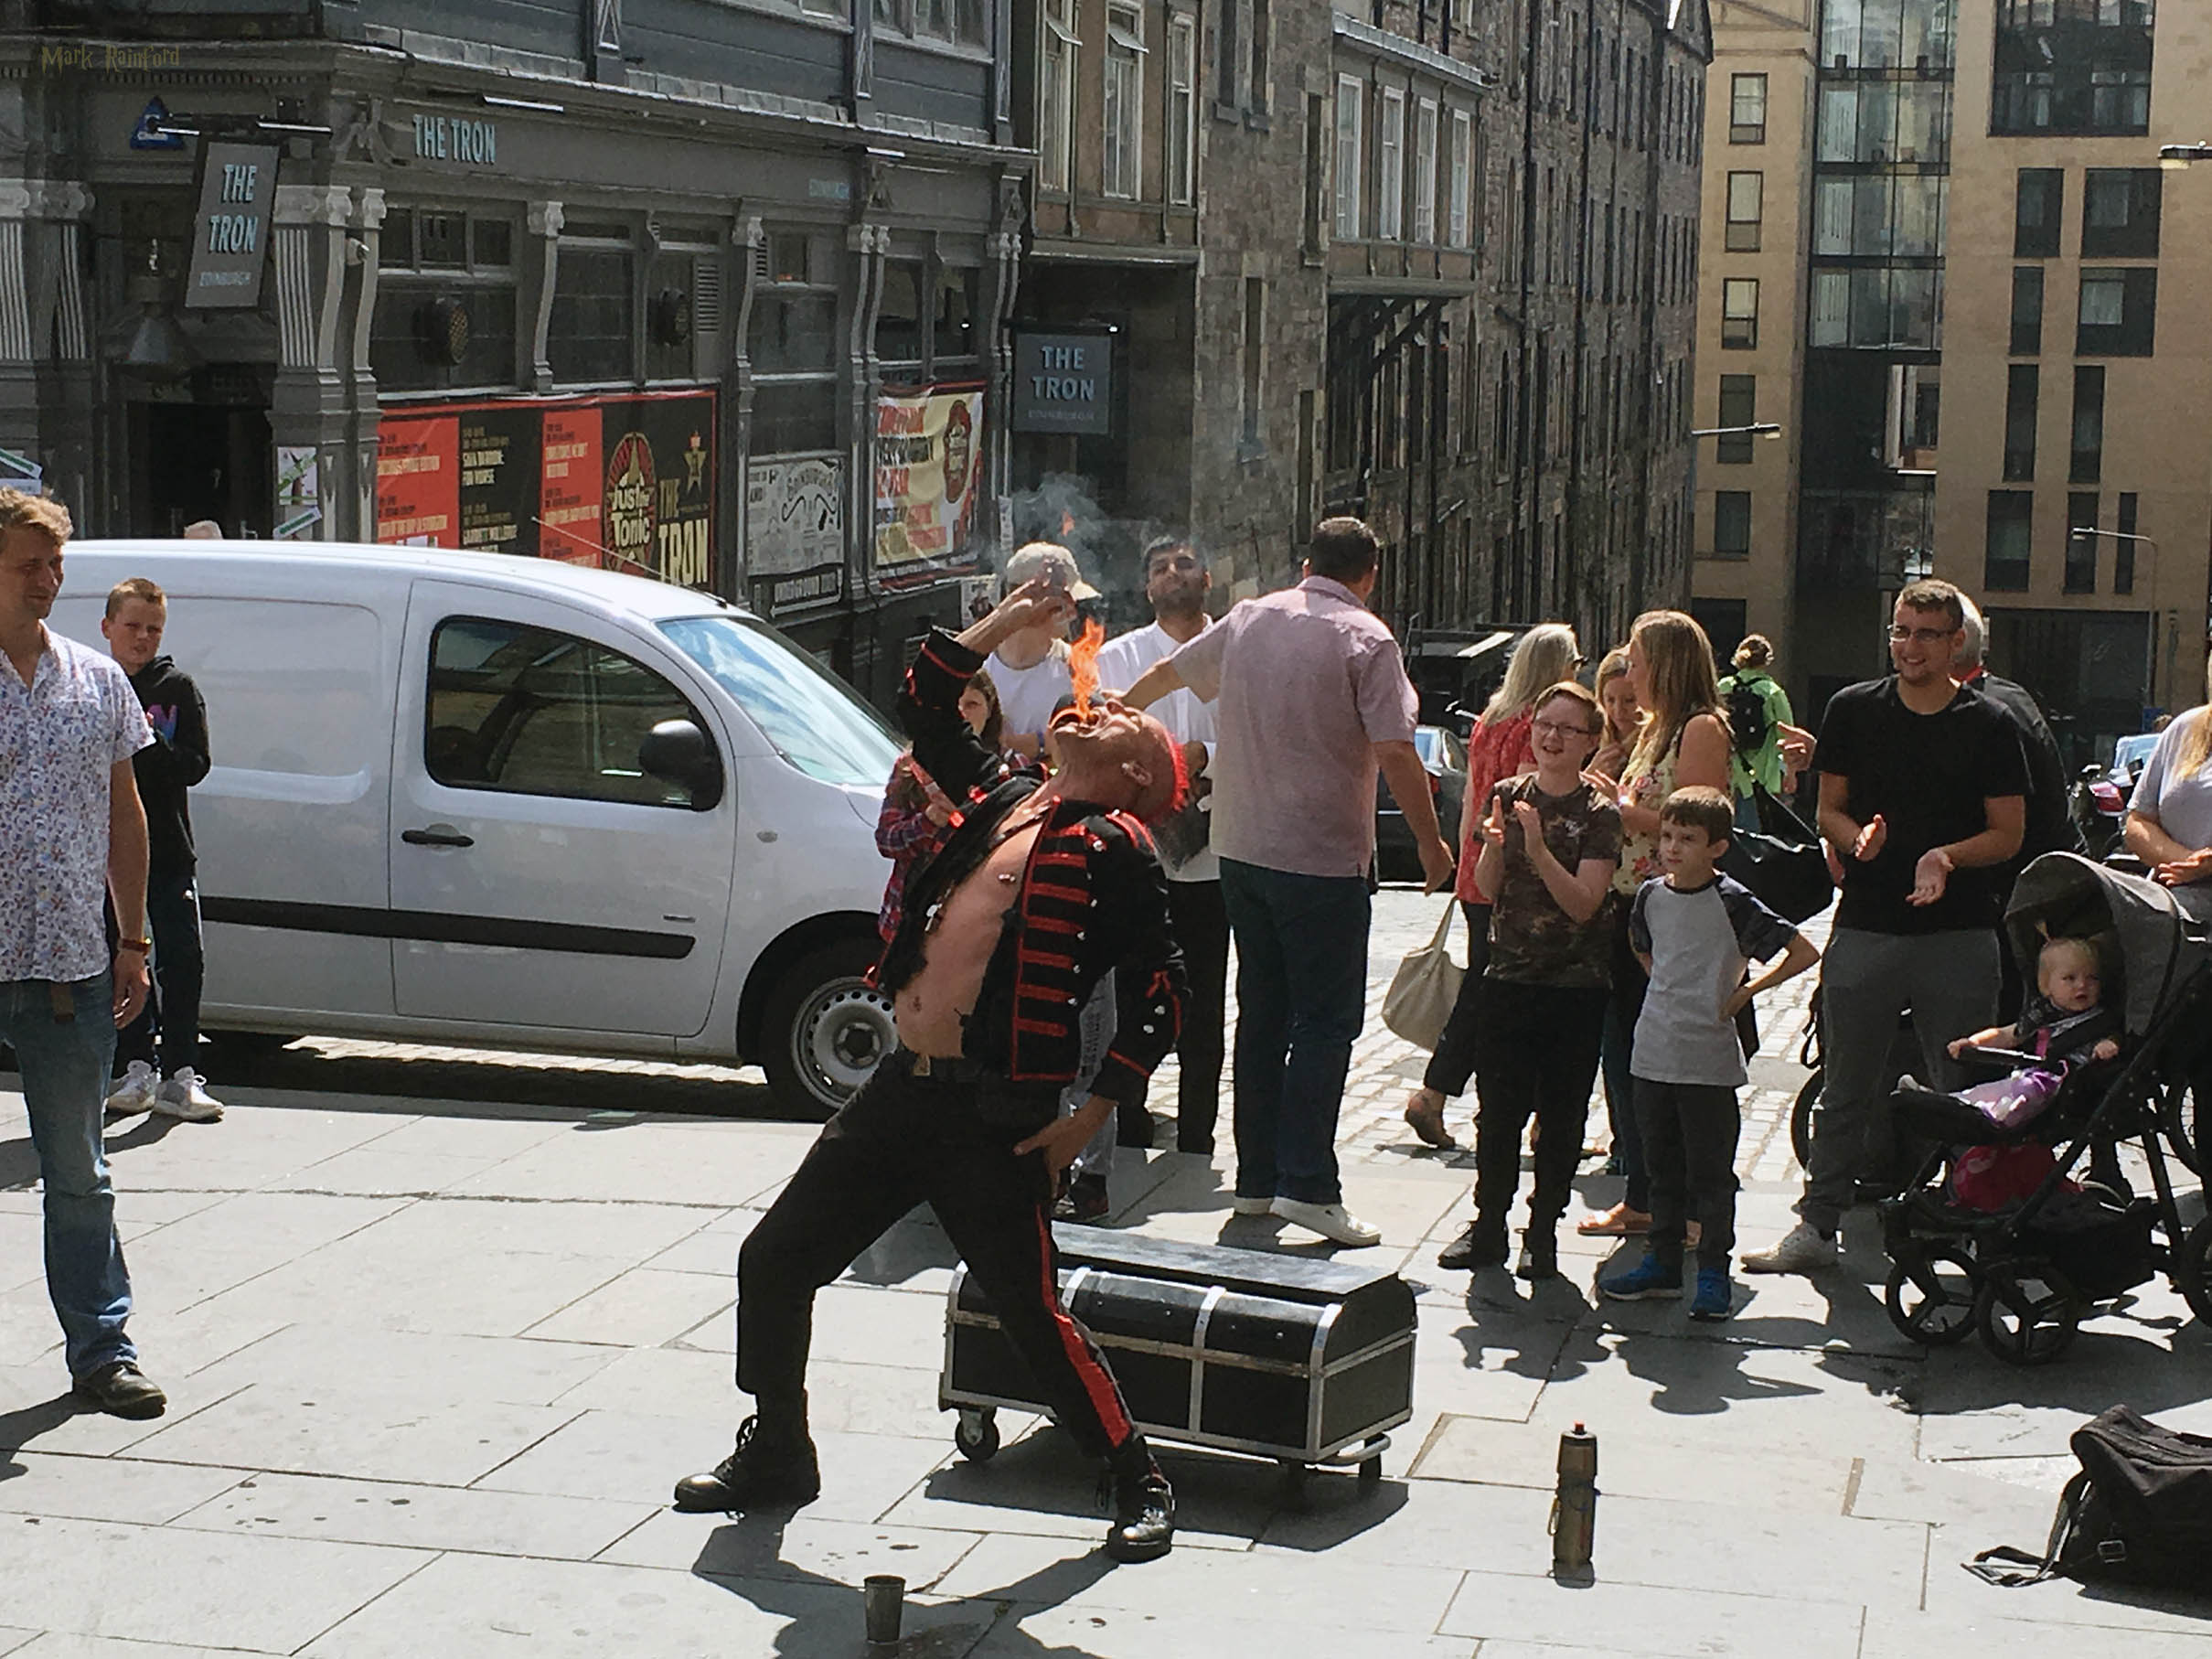 edinburgh festival fringe 2018 street performers